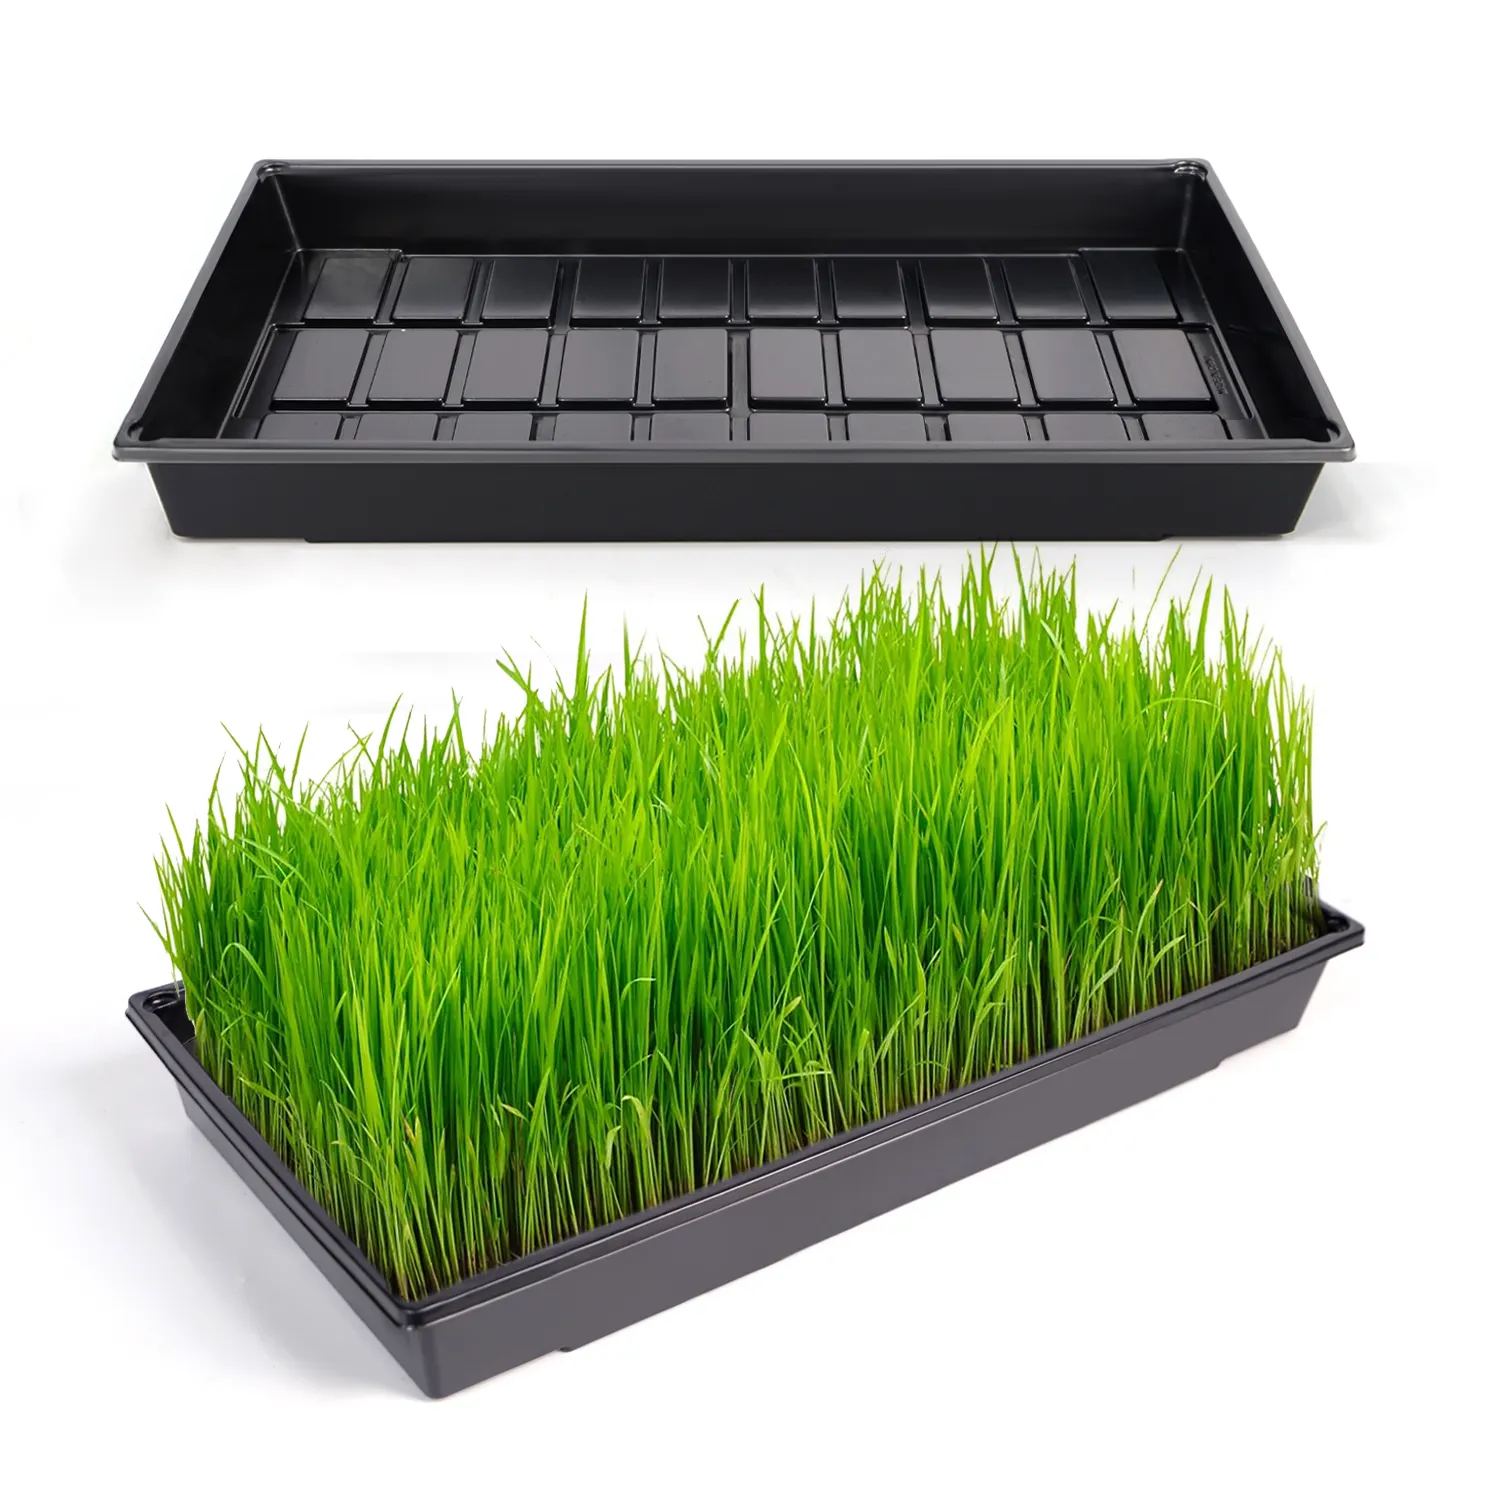 Plantation hydroponique 1020 Germination de graines plates Microgreens plateau de semis pour herbe de blé fourrage germes de riz légumes